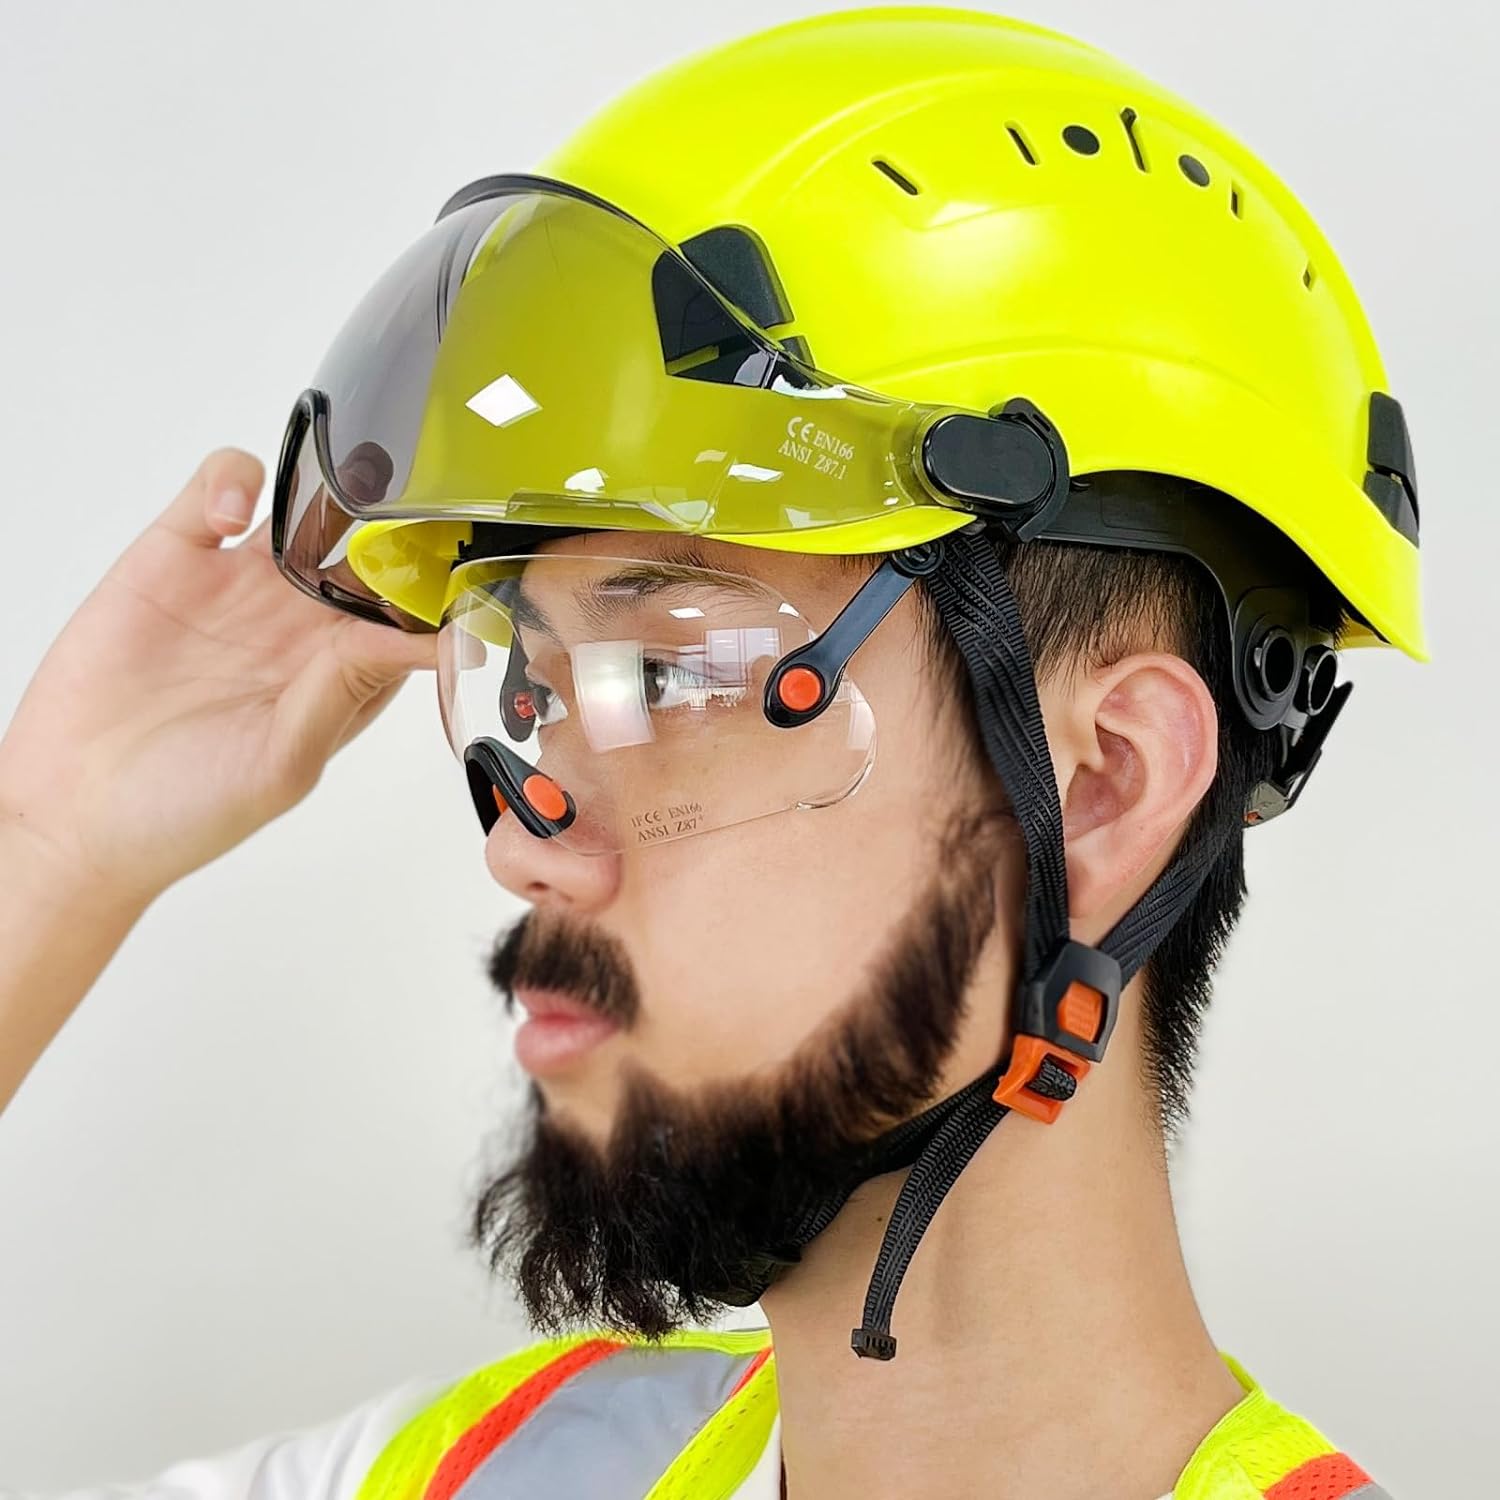 Helmet Clips for Light Lamp Hard Hat Light Clips,Hardhat Accessory, Mount  Hook for Helmet,Cap Strap 100 Pcs 